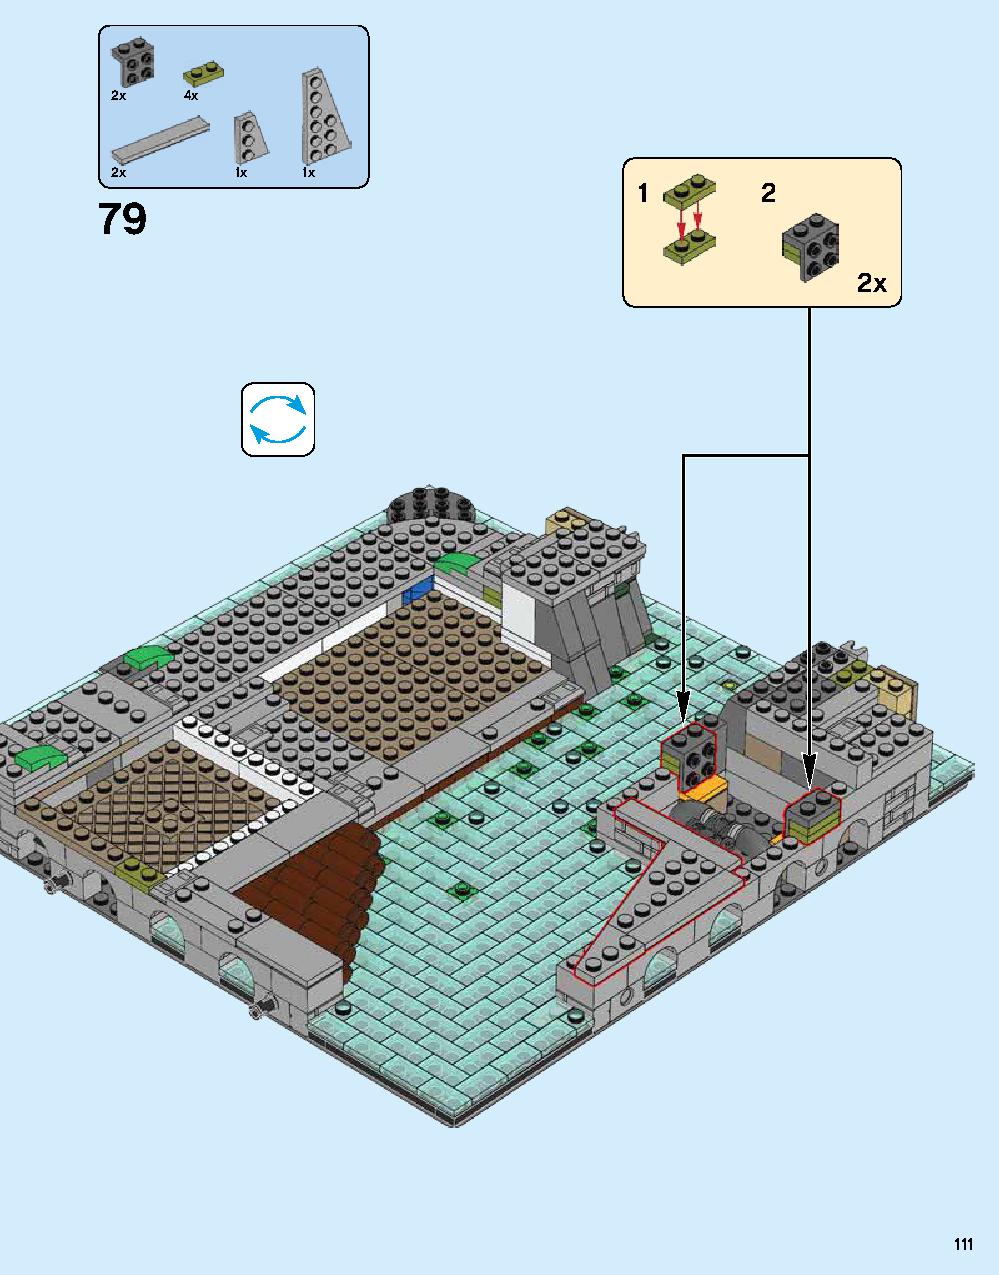 ニンジャゴー シティ 70620 レゴの商品情報 レゴの説明書・組立方法 111 page